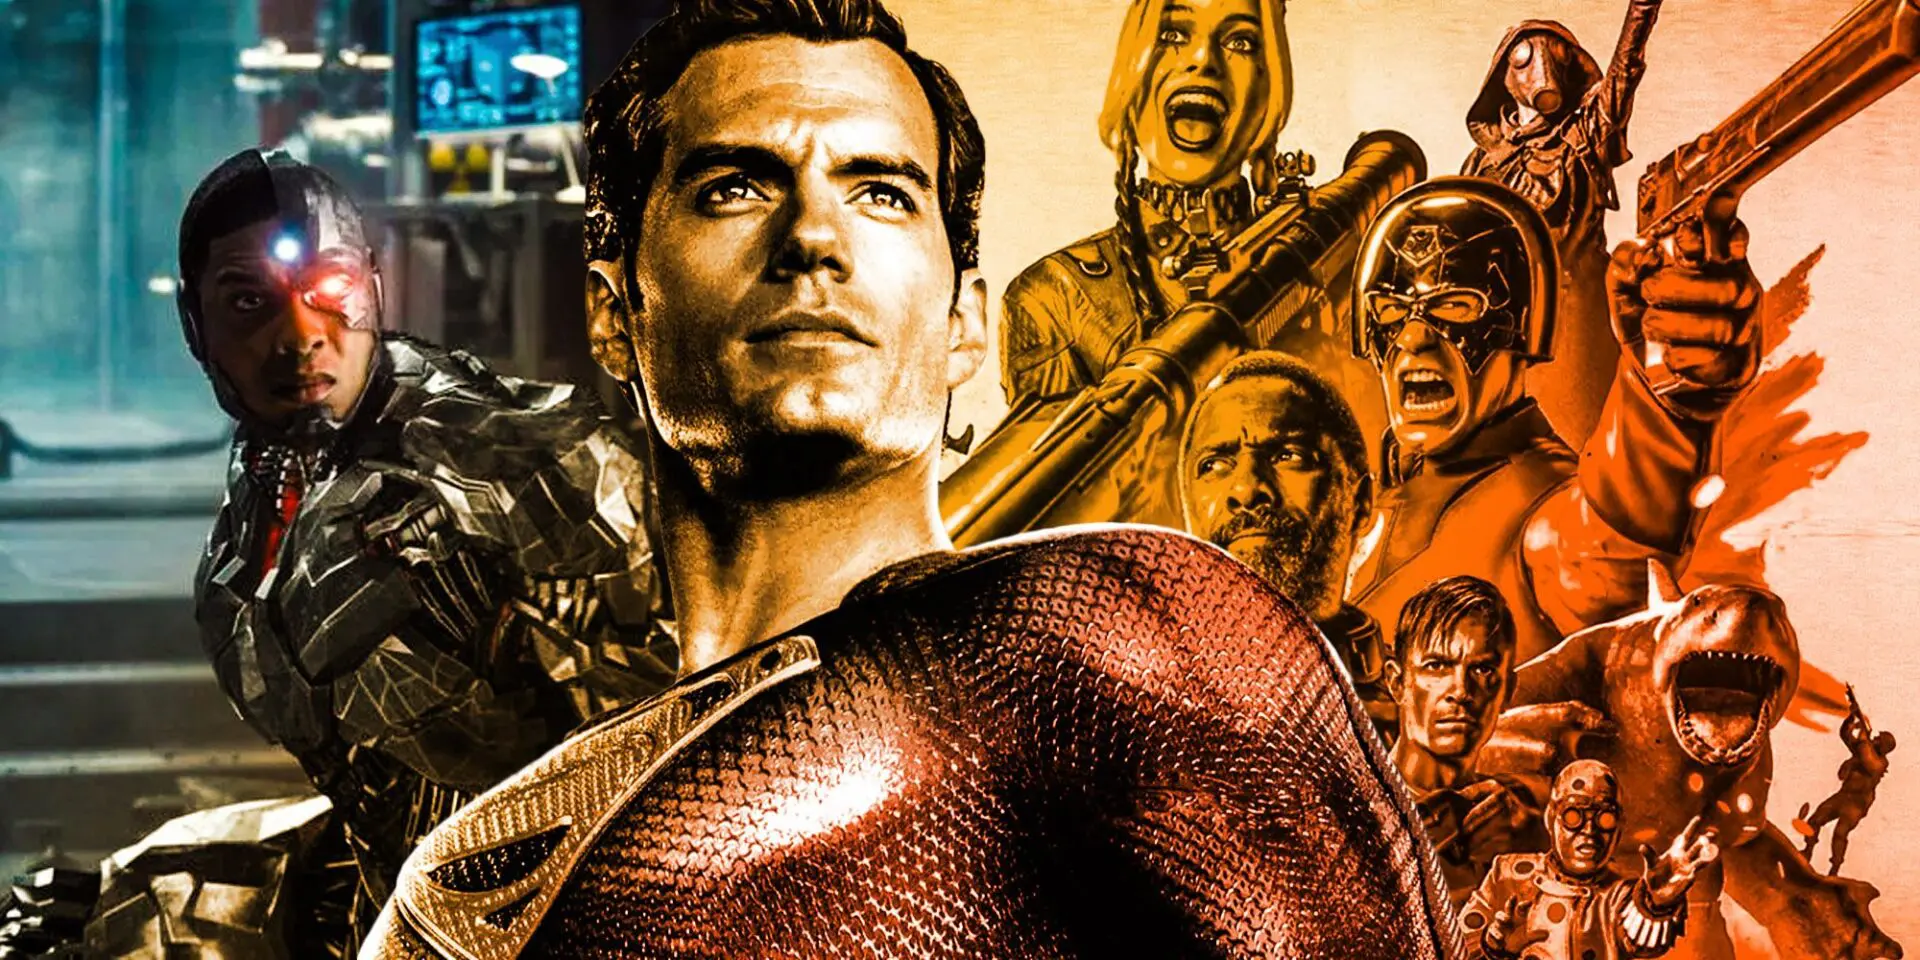 The-suicide-squad-Justice-league-snyder-cut-Superman-cyborg-1.jpg.webp